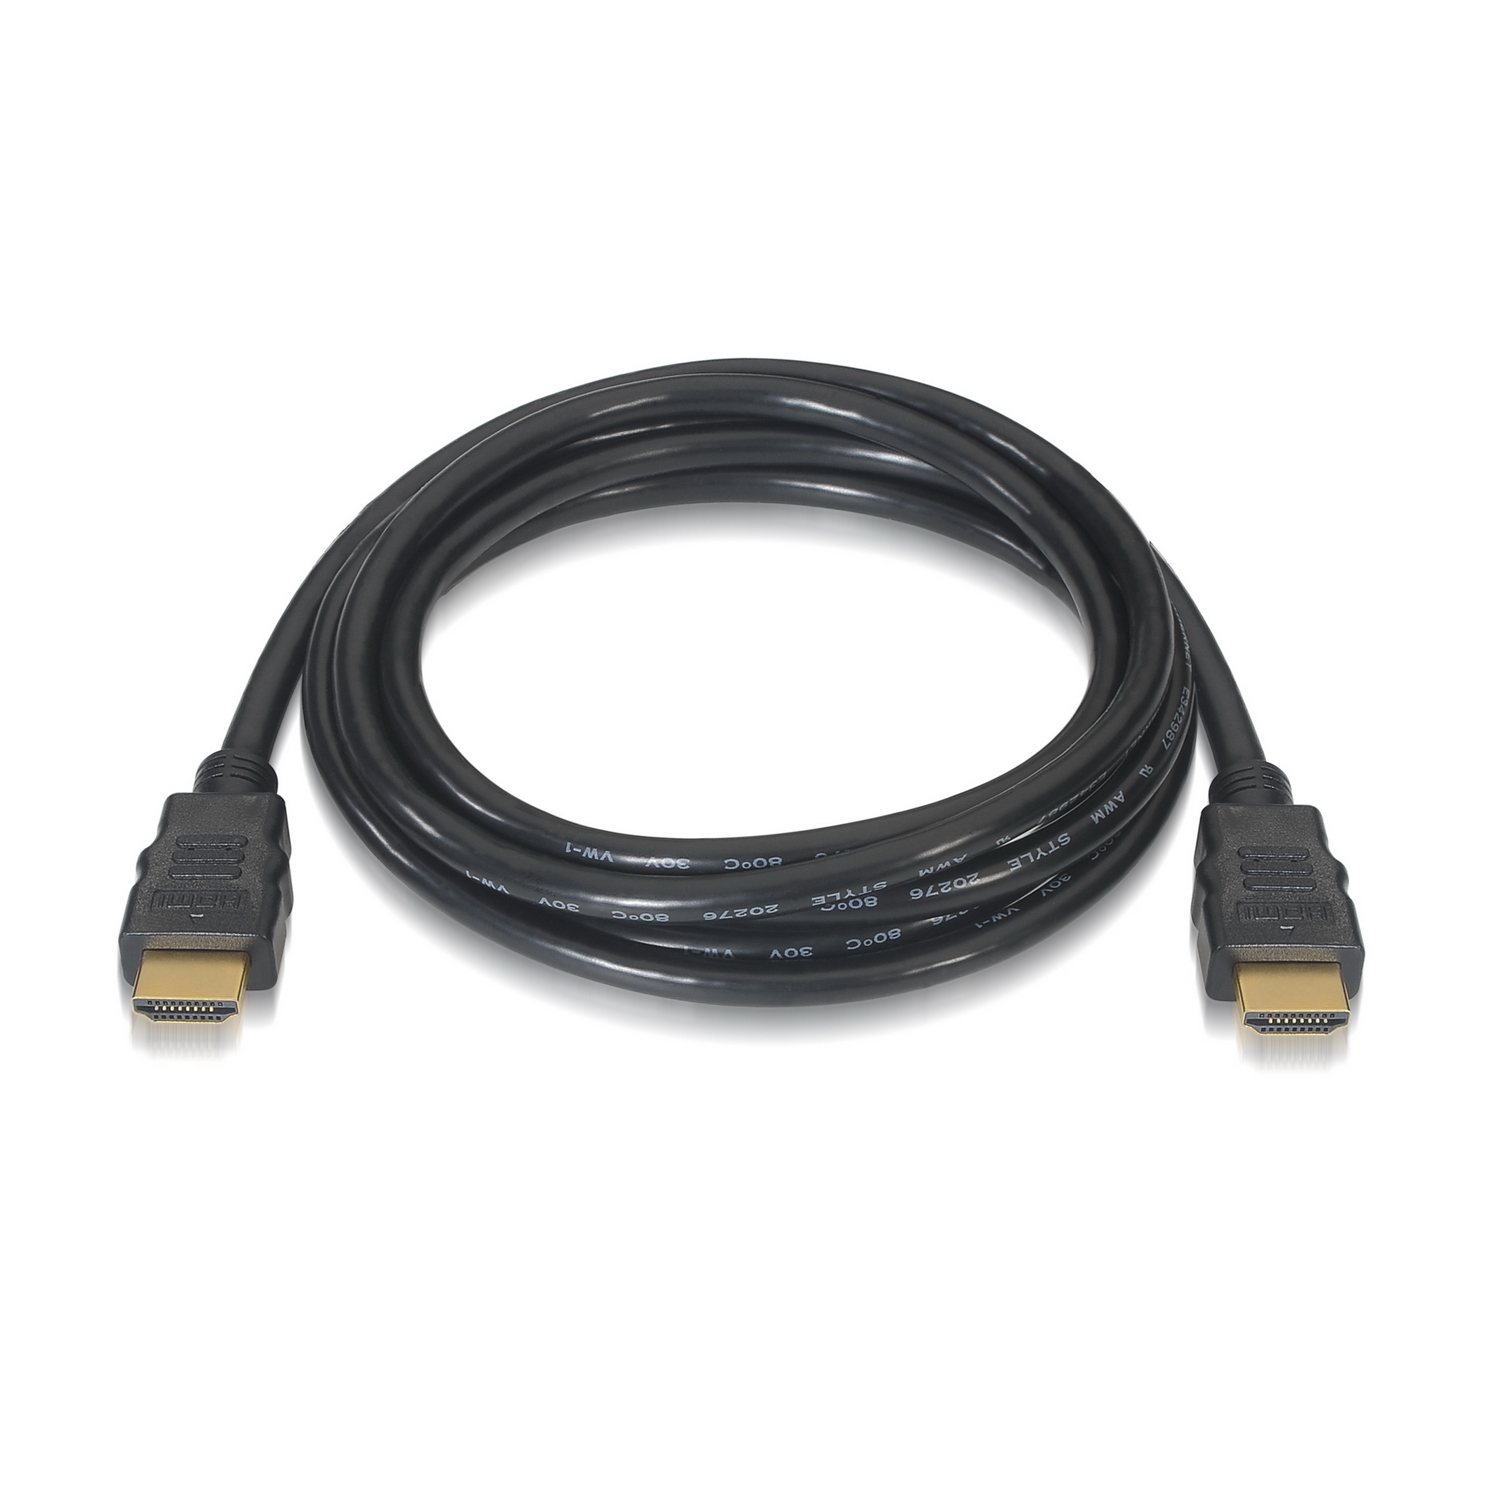 Adaptador HDMI de 90 Grados Macho a Hembra / Hacia Abajo / HDMI 2.0 4K@60Hz  / Proporciona Flexibilidad Sin Doblar los Cables HDMI » Bigcom